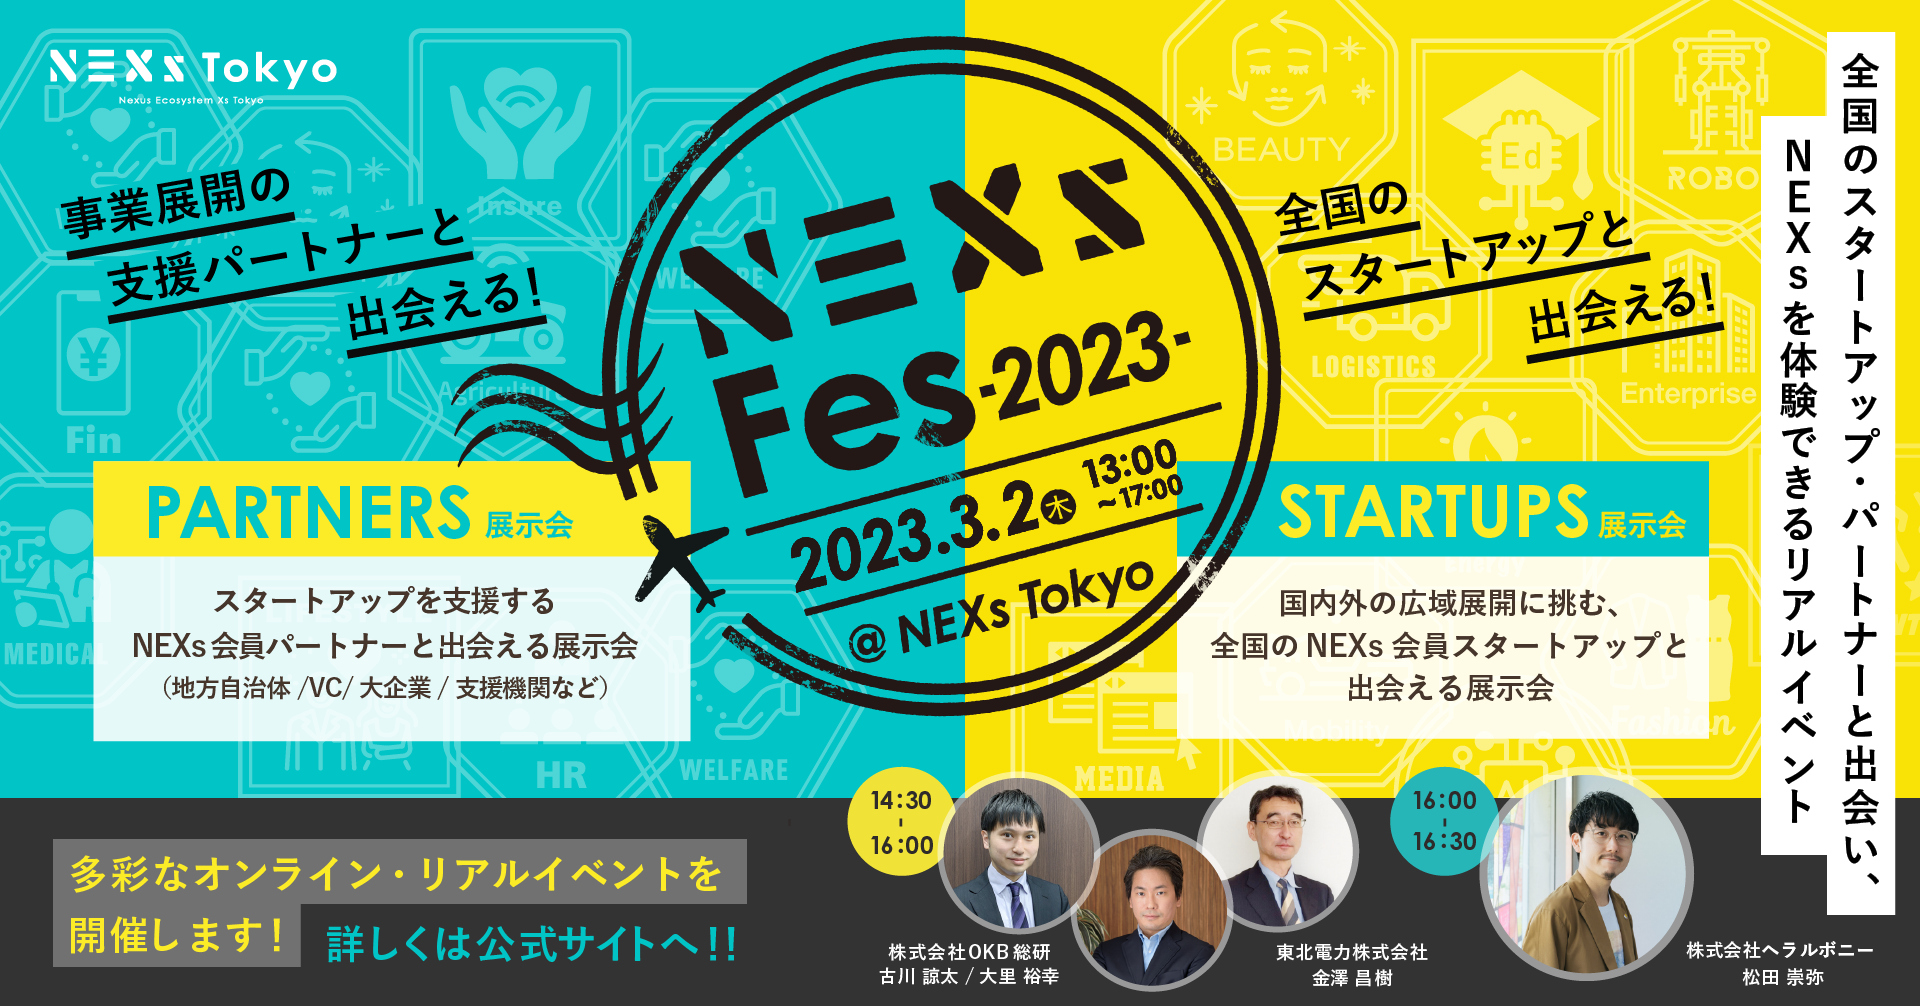 全国のスタートアップ&事業展開パートナーと出会い、NEXsを体験できるリアルイベント「NEXs Fes 2023」